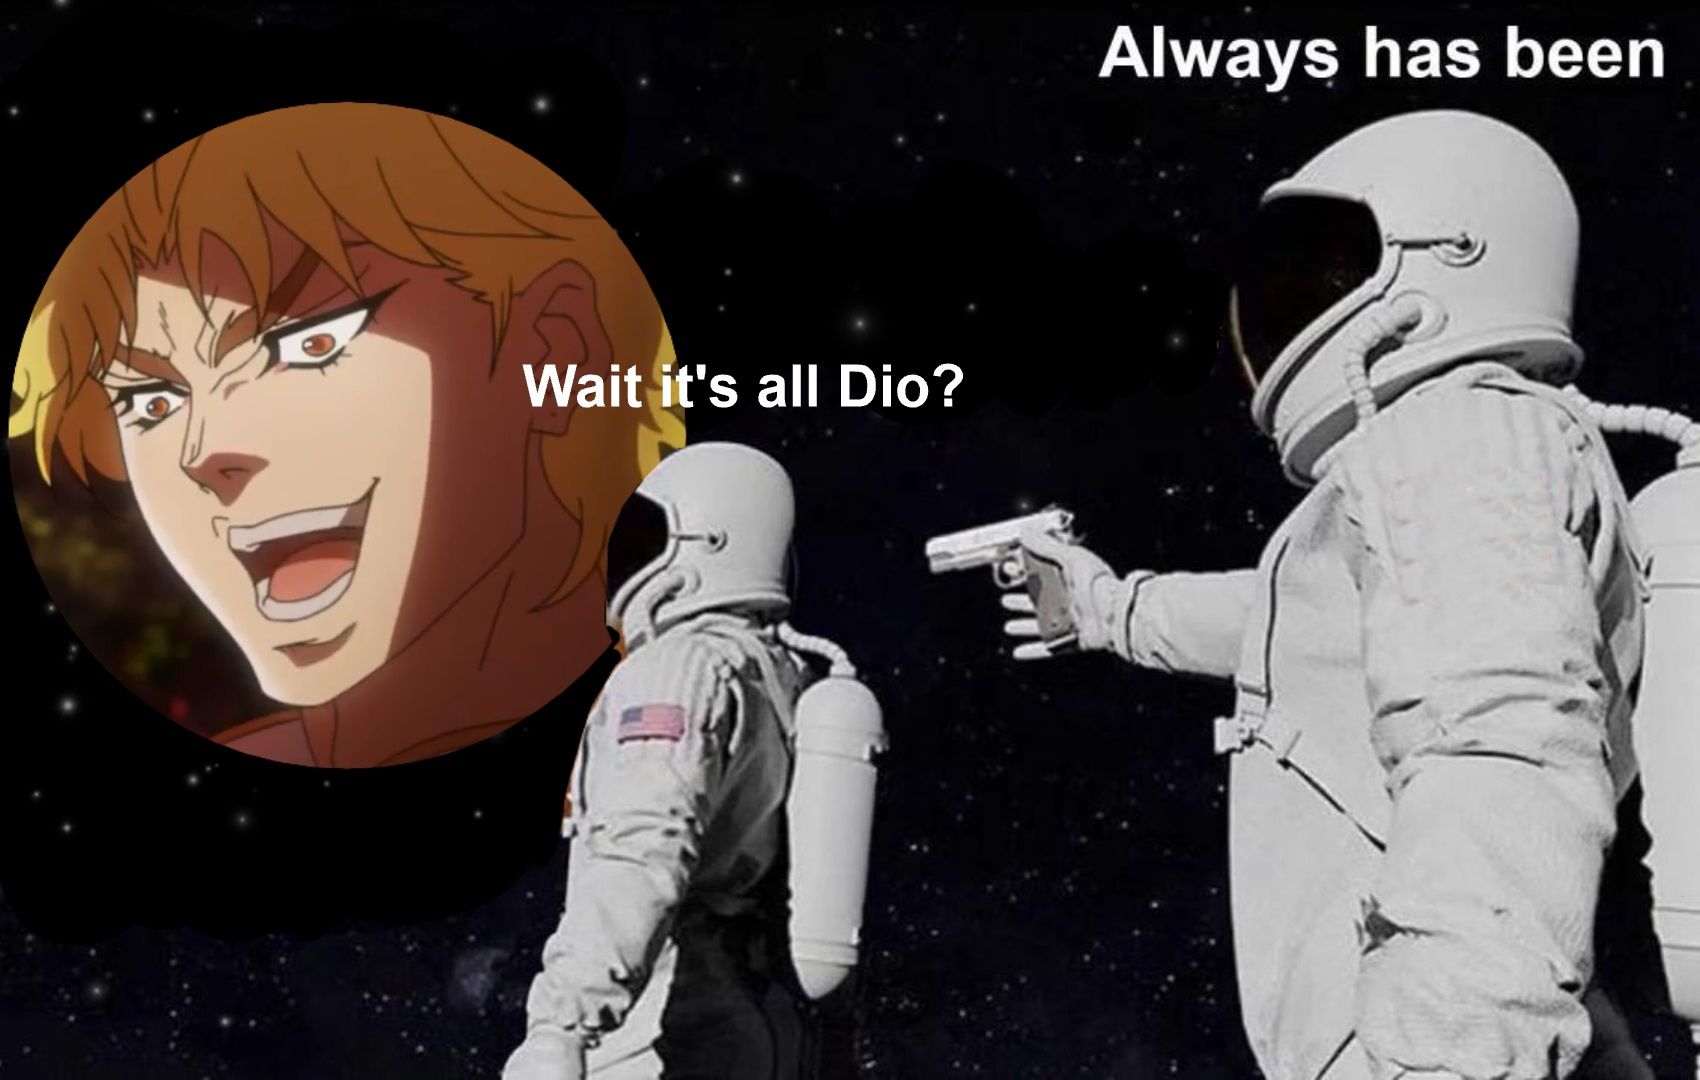 It always has been meme, Dio JoJo's Bizarre Adventure 